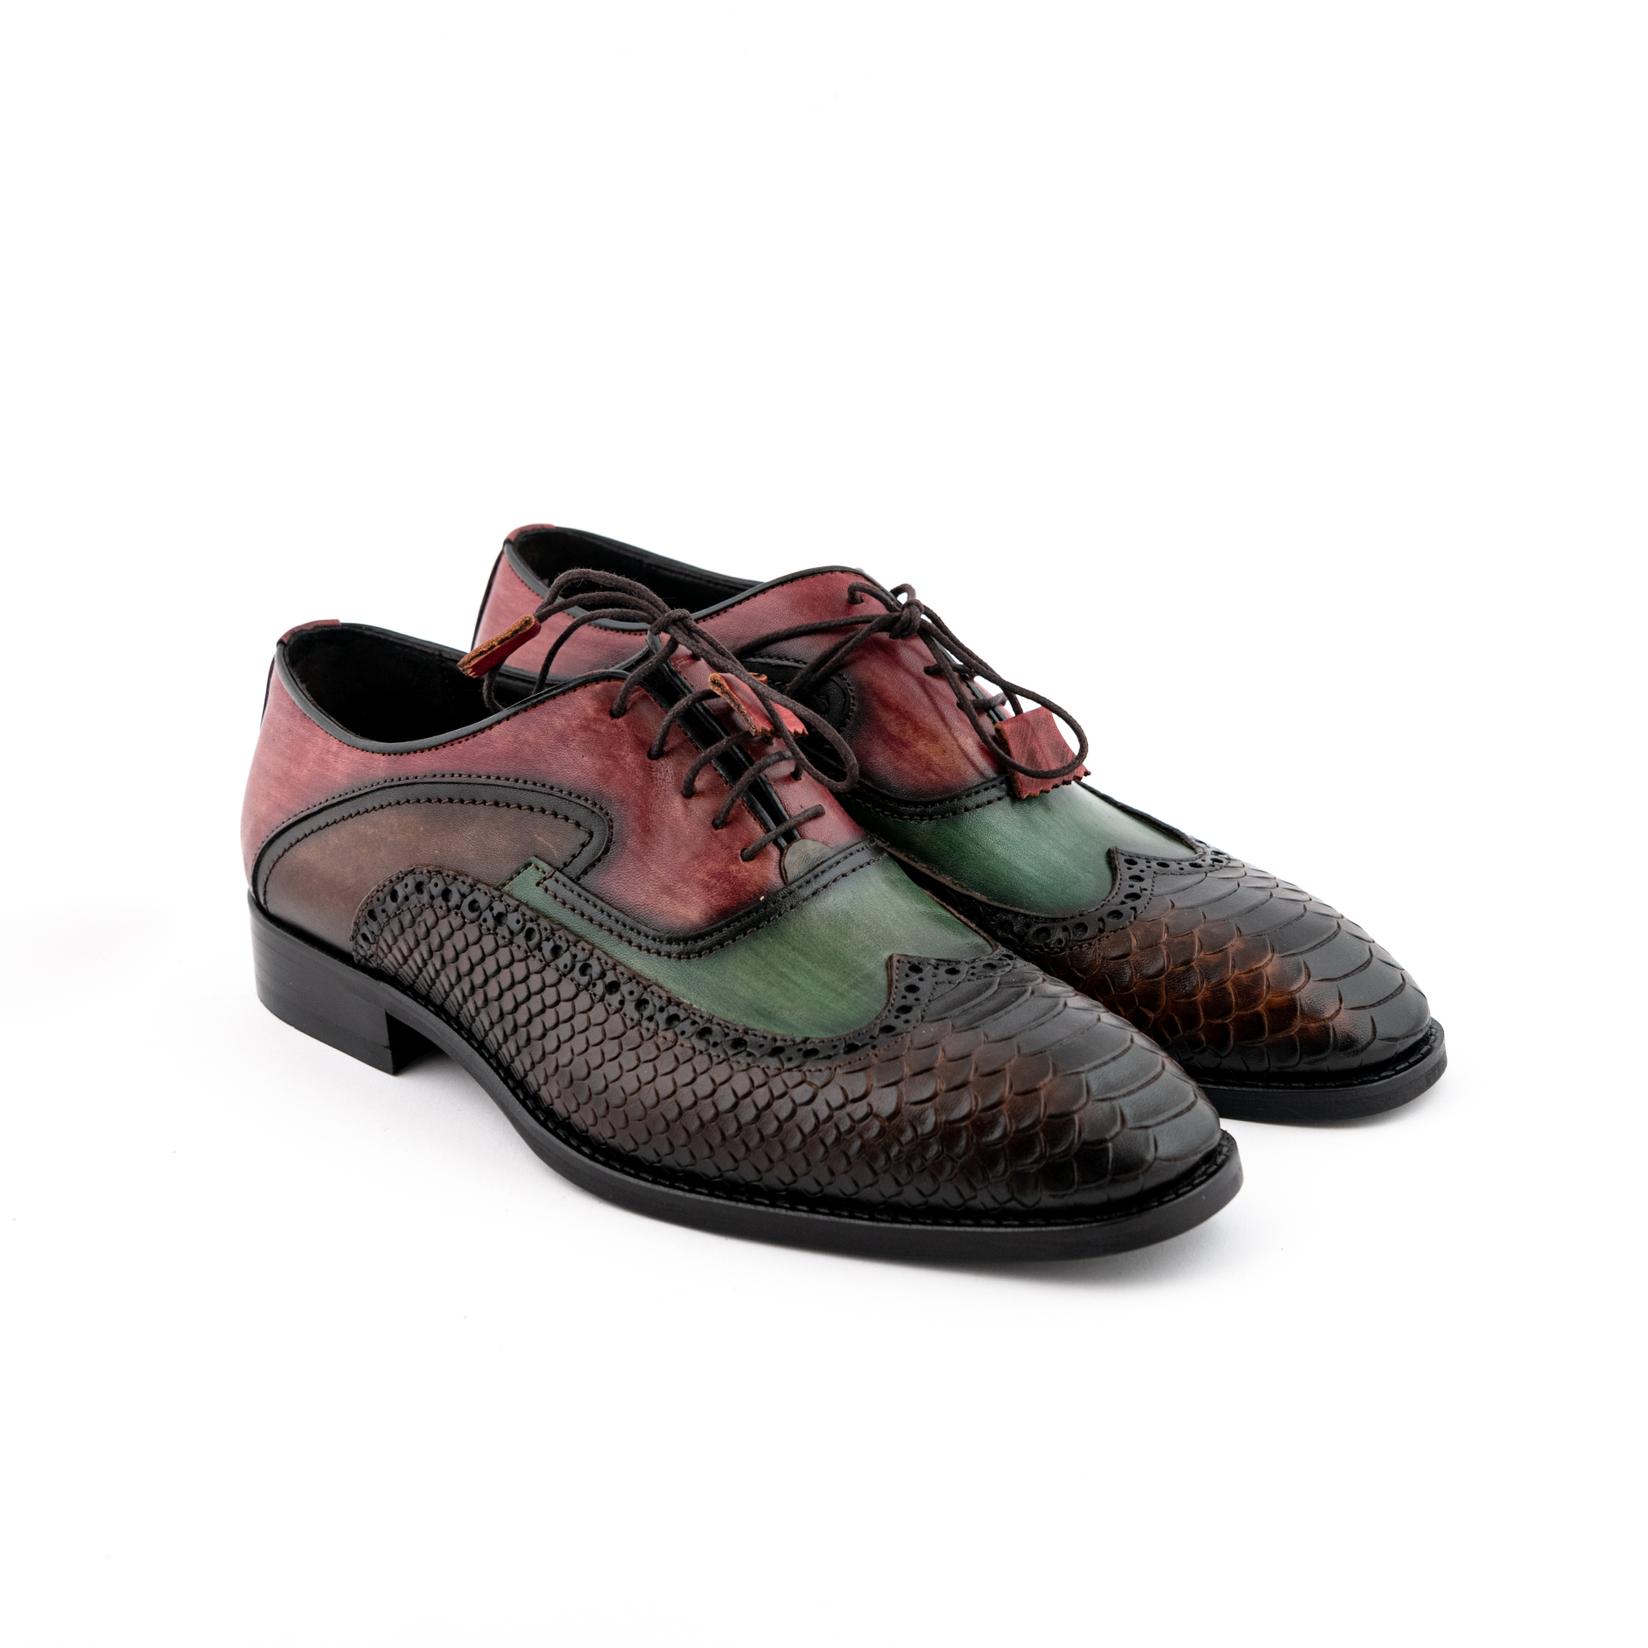 SANTOS & SANTORINI Muške cipele Antonio braon-zelene